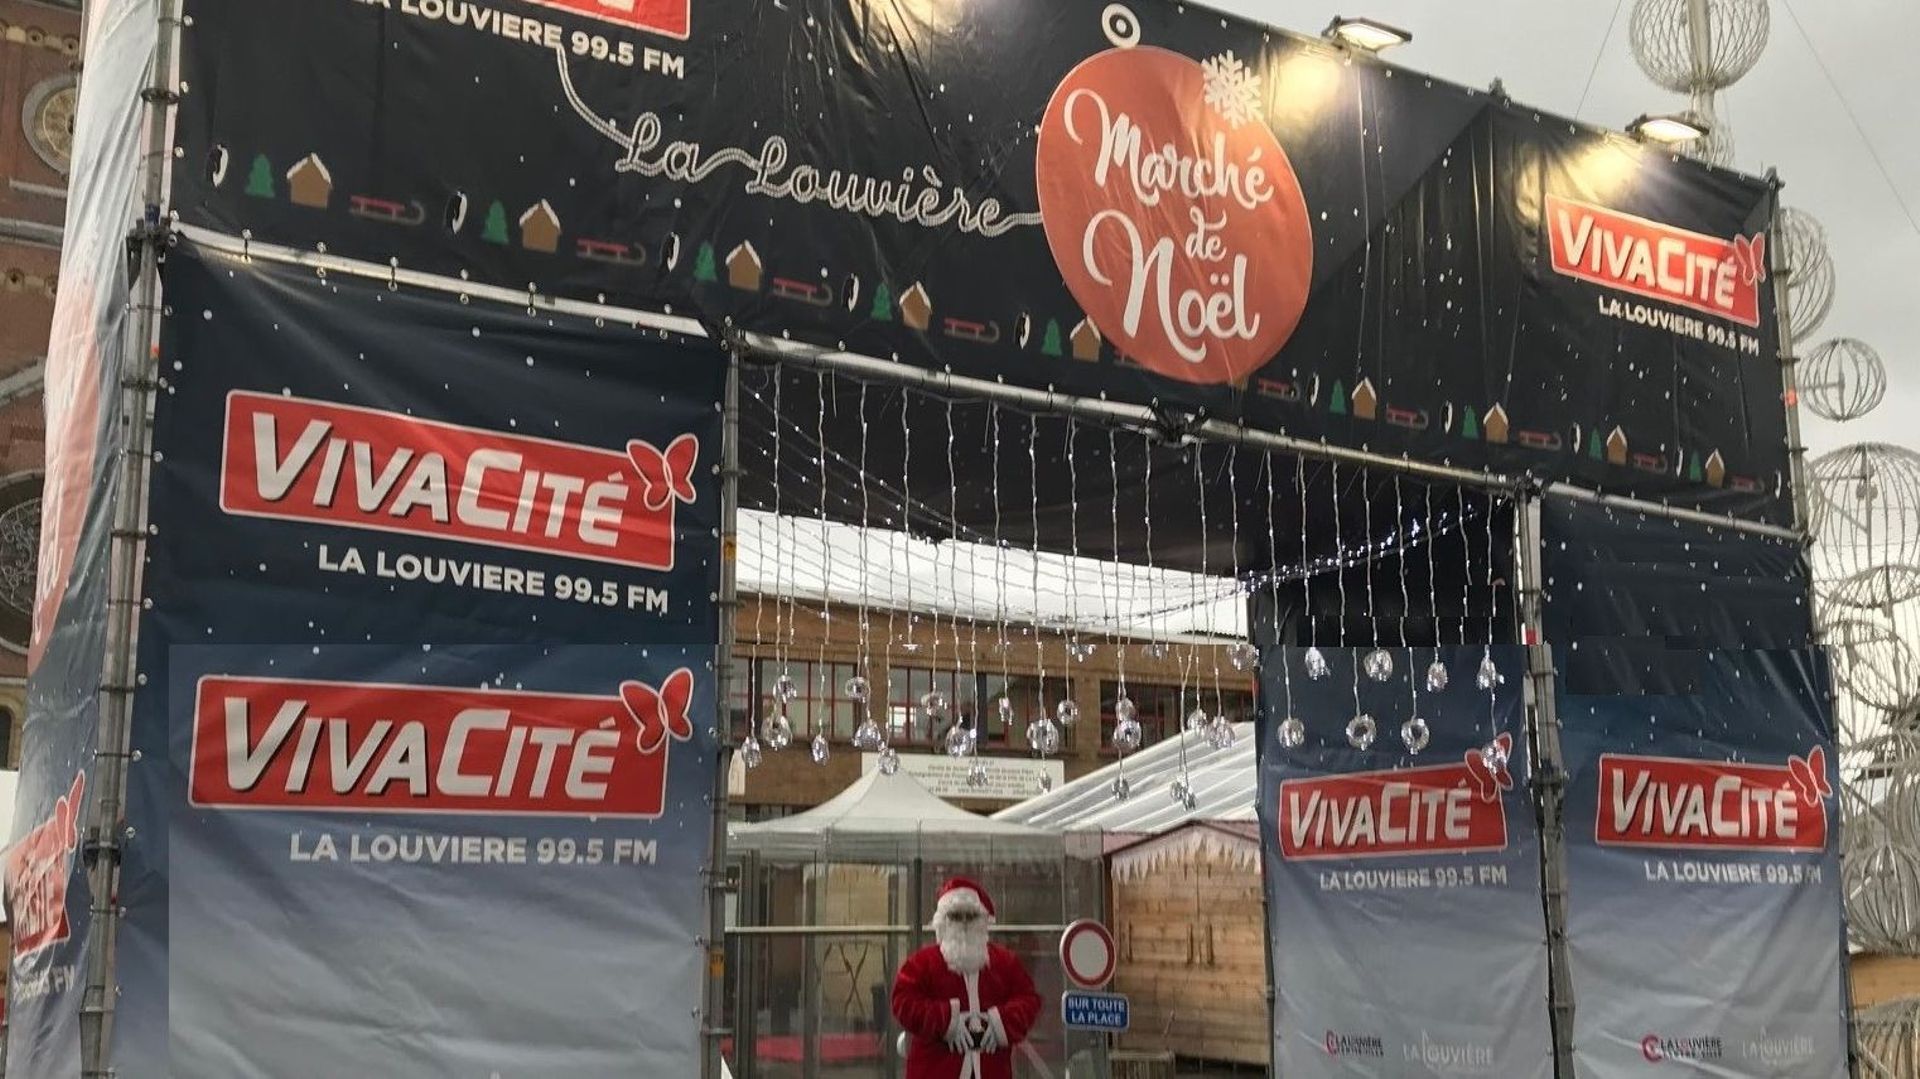 Le Père Noël, présent en 2019 à La Louvière, ne pourra pas déambuler sur le marché de Noël cette année